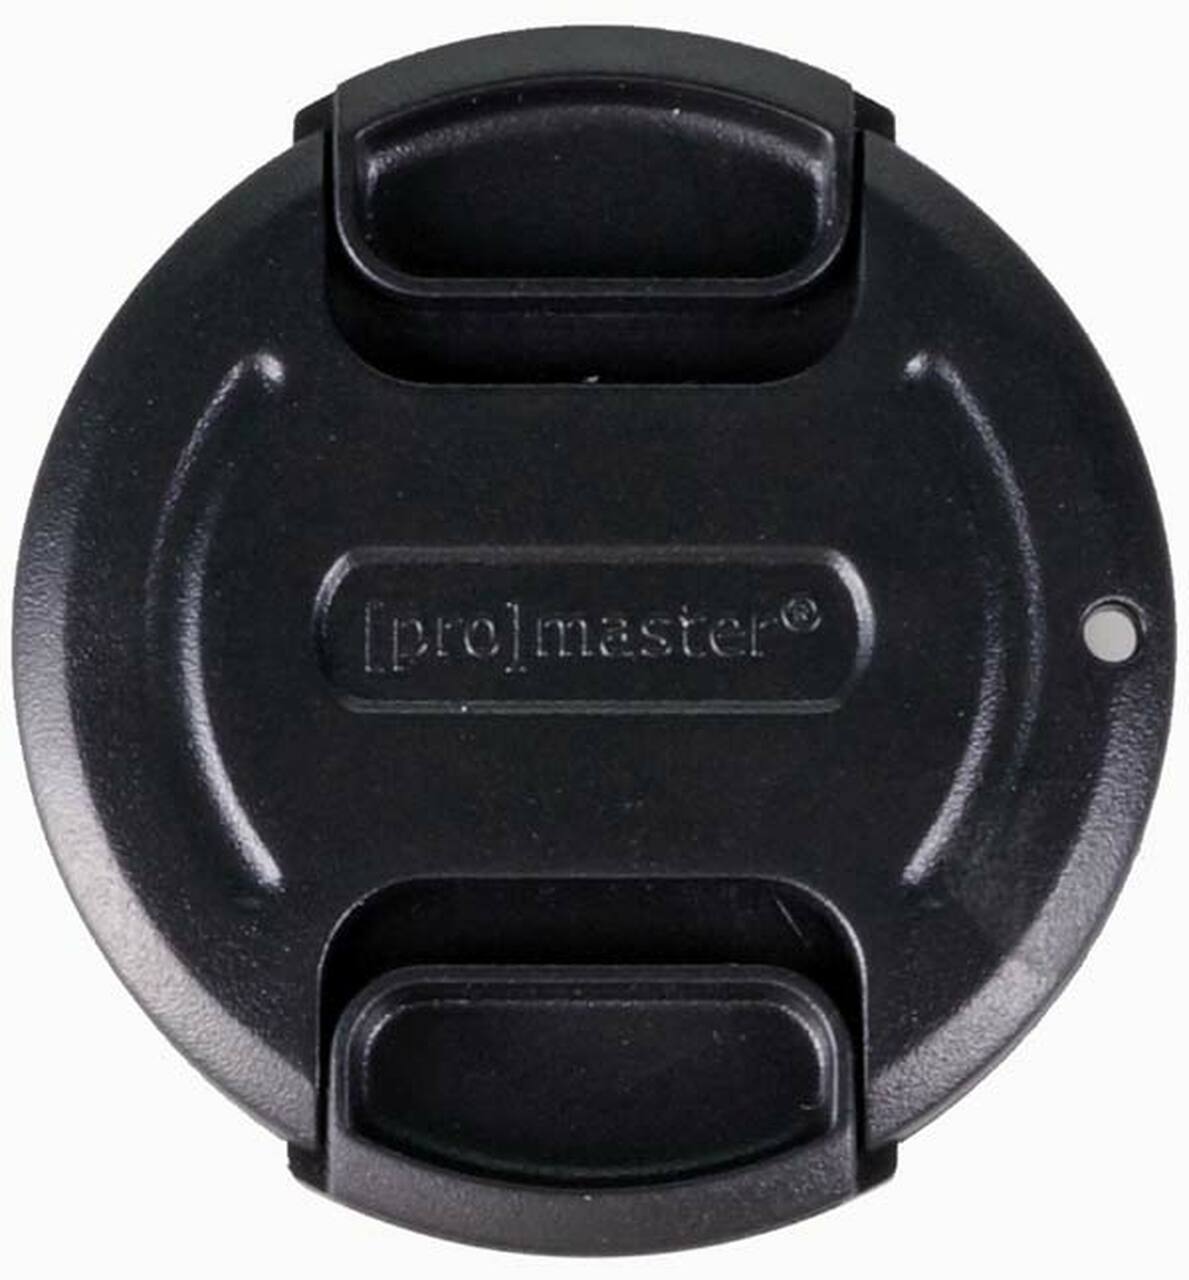 Promaster 1408 46mm Lens Cap